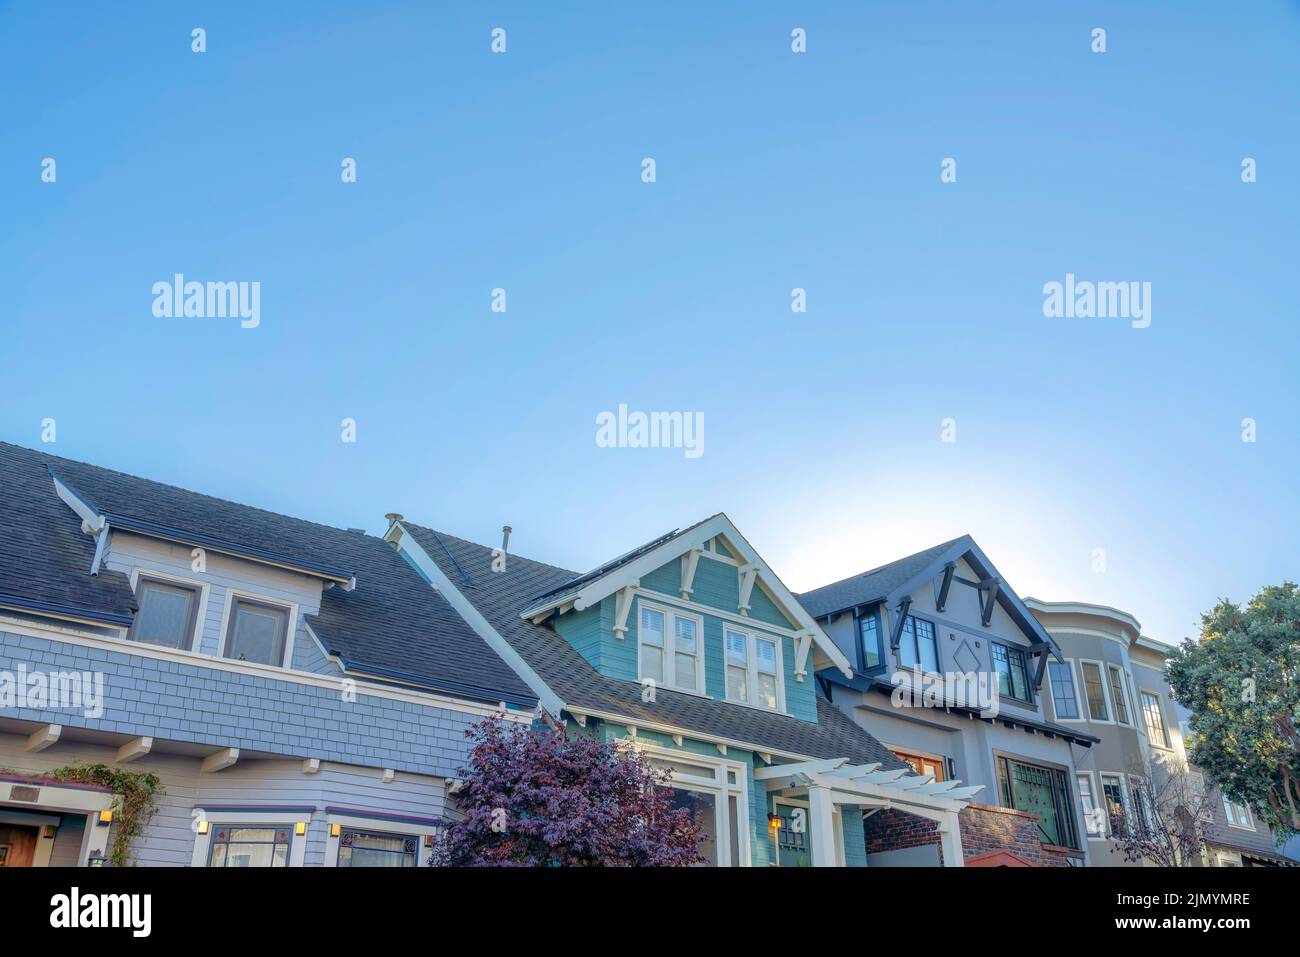 Häuser mit dekorativen Gebiden und Klammern in San Francisco, Kalifornien. Auf der linken Seite befinden sich zwei Häuser mit Dachgächern und lackierten Holzverkleidungen Stockfoto